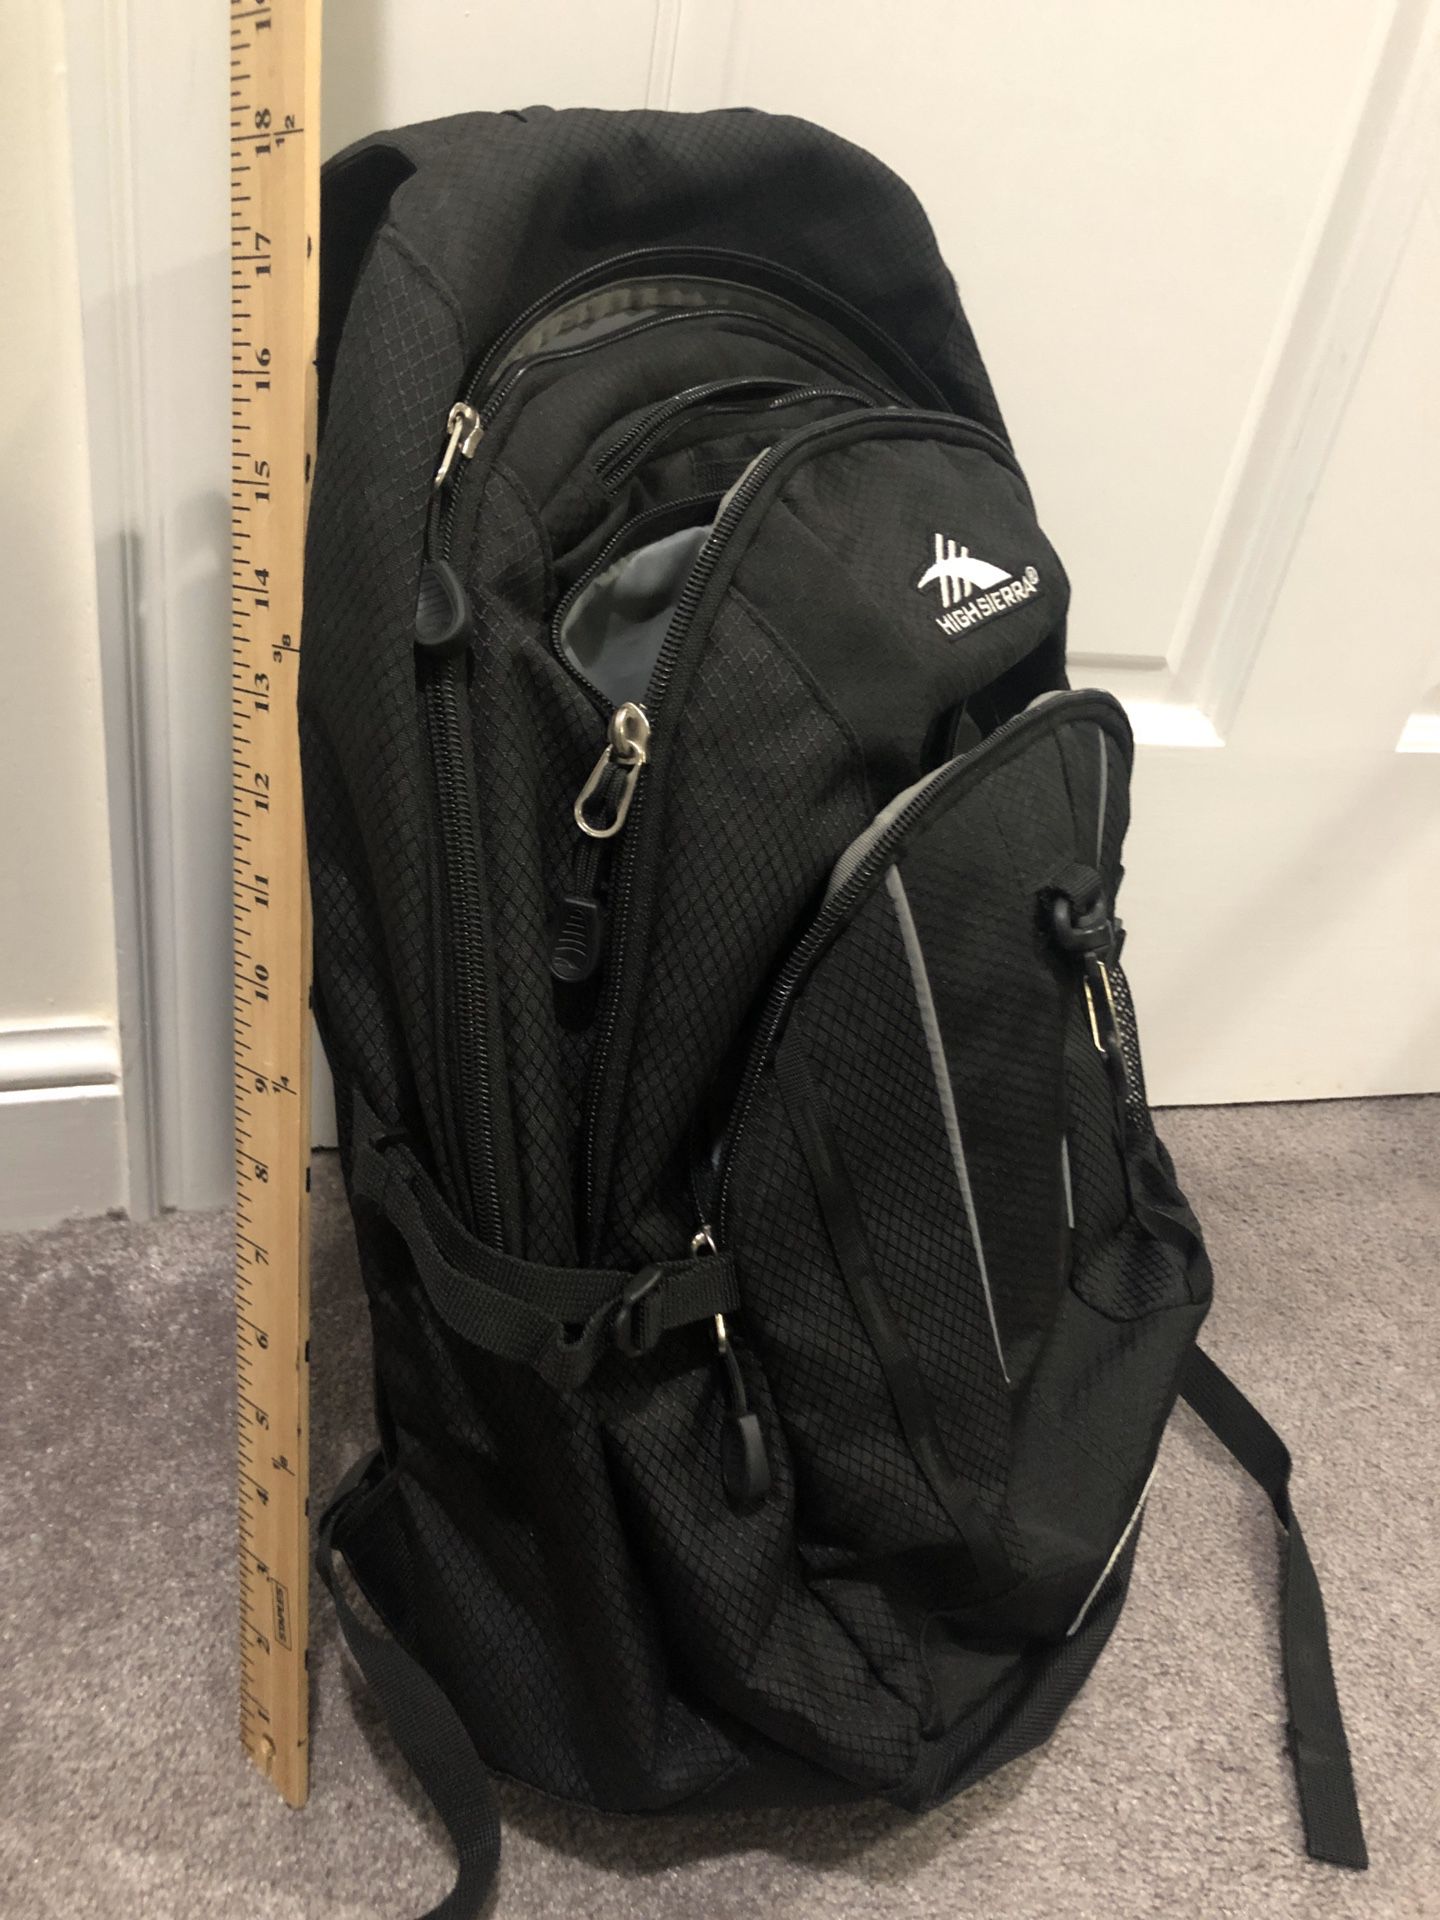 High Sierra backpack